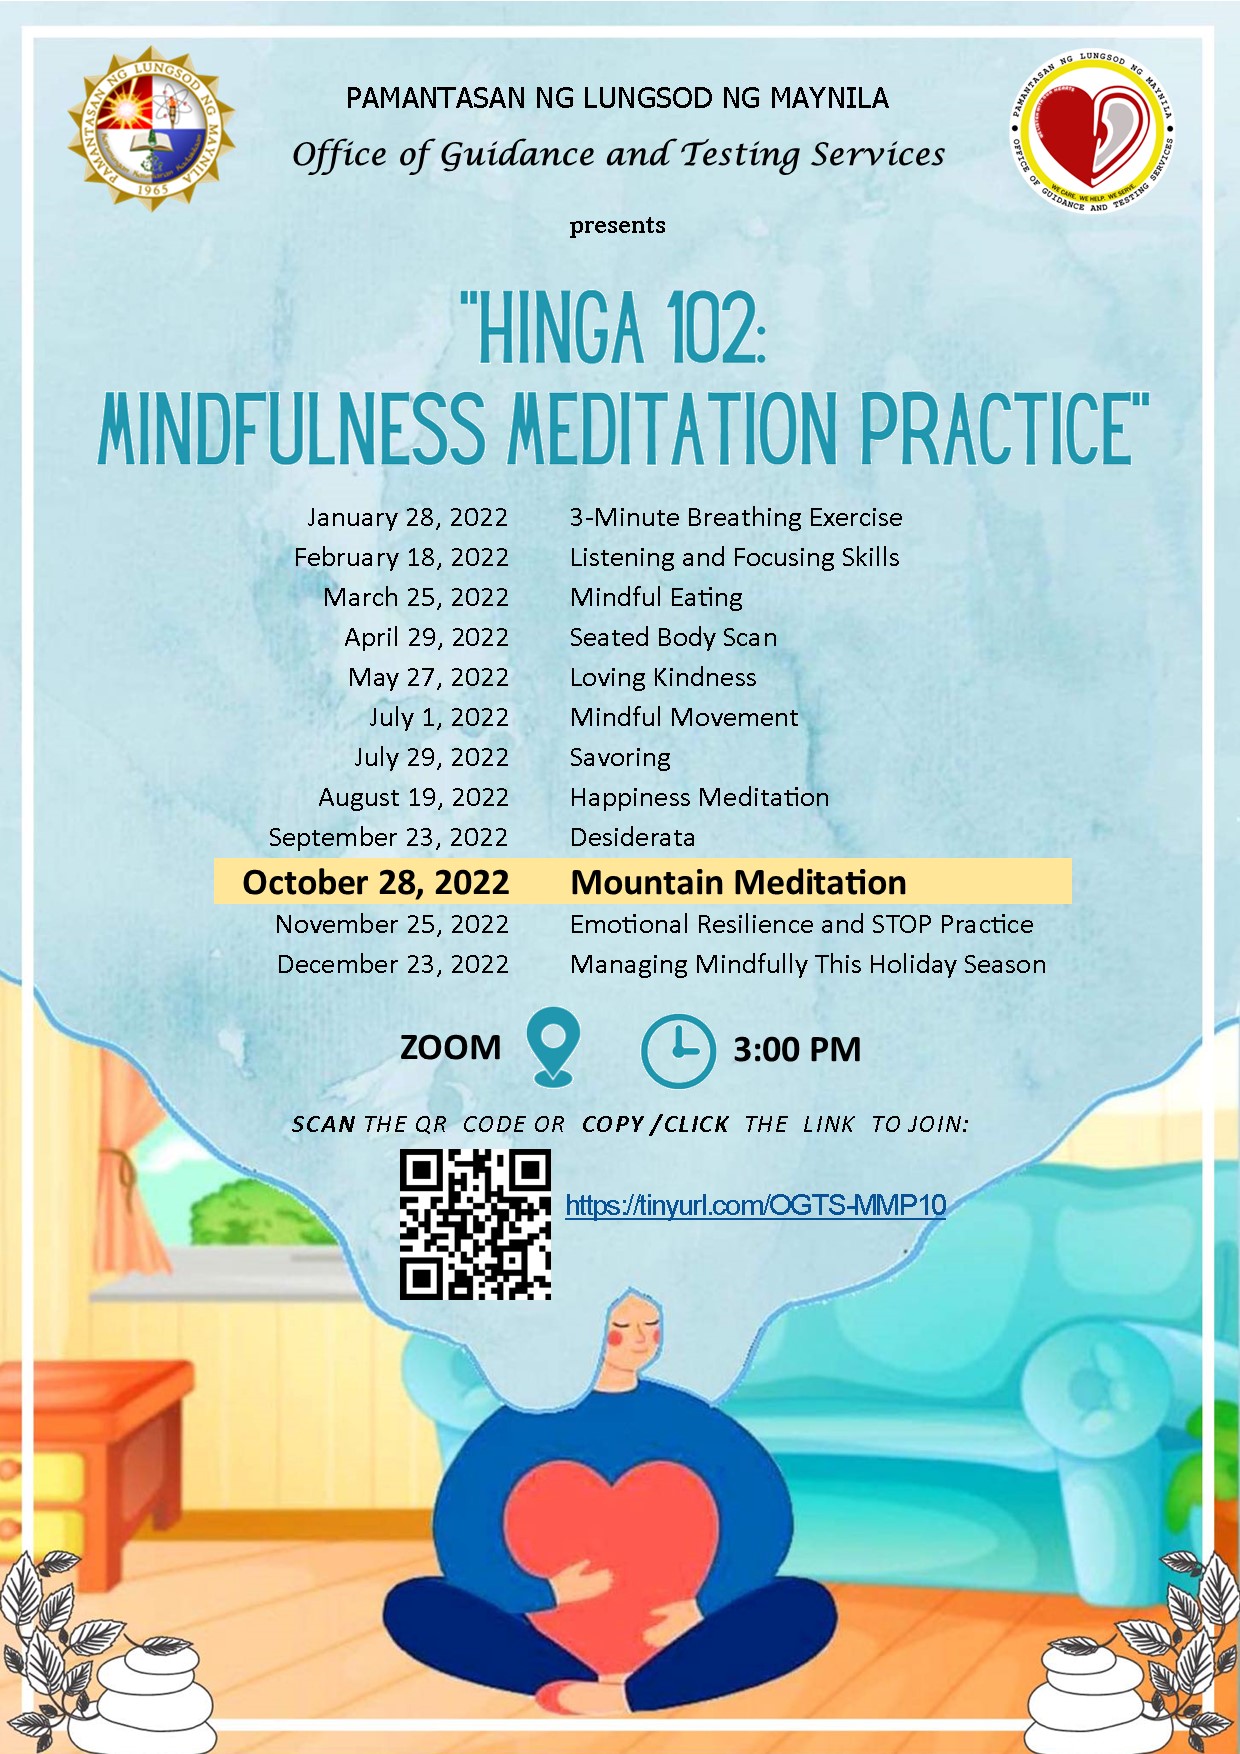 Join Hinga 102's Mountain Meditation October 28, 3:00PM (2)